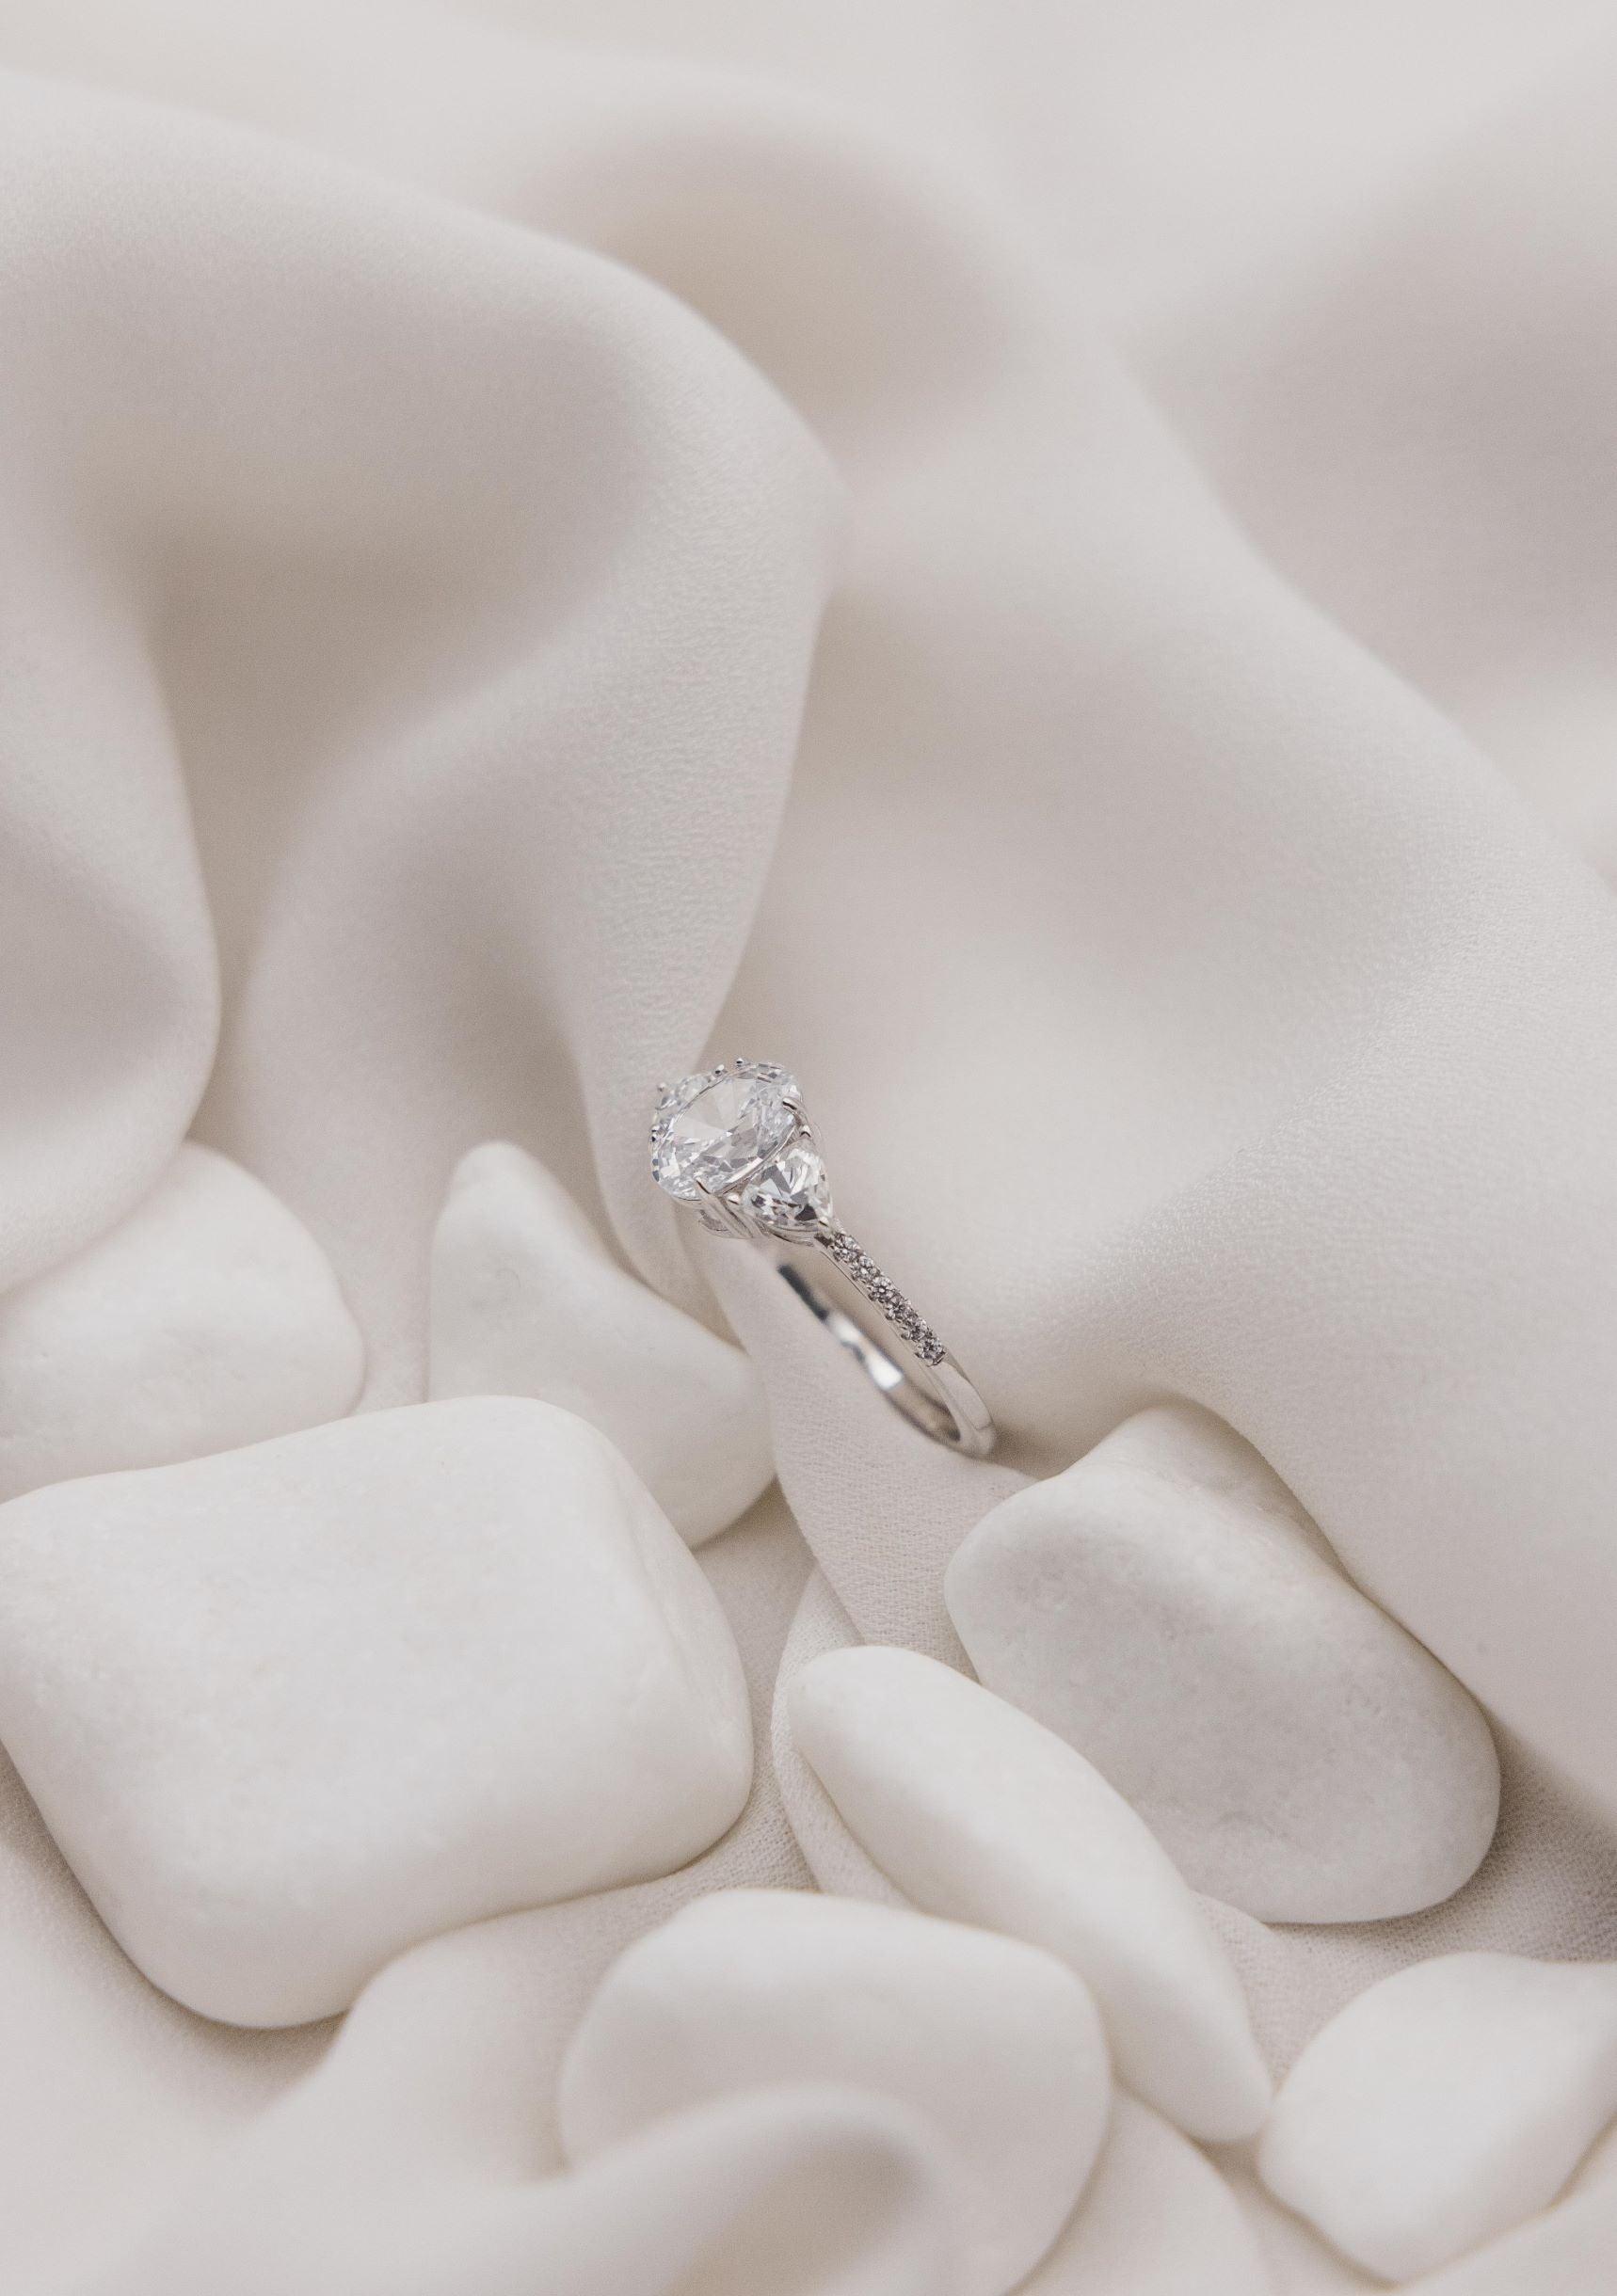 Μονόπετρο δαχτυλίδι με οβάλ κεντρικό διαμάντι και πλαίνές πέτρες από μικρότερα διαμάντια, κατασκευασμένο από λευκόχρυσο, επάνω σε λευκό μετάξι.